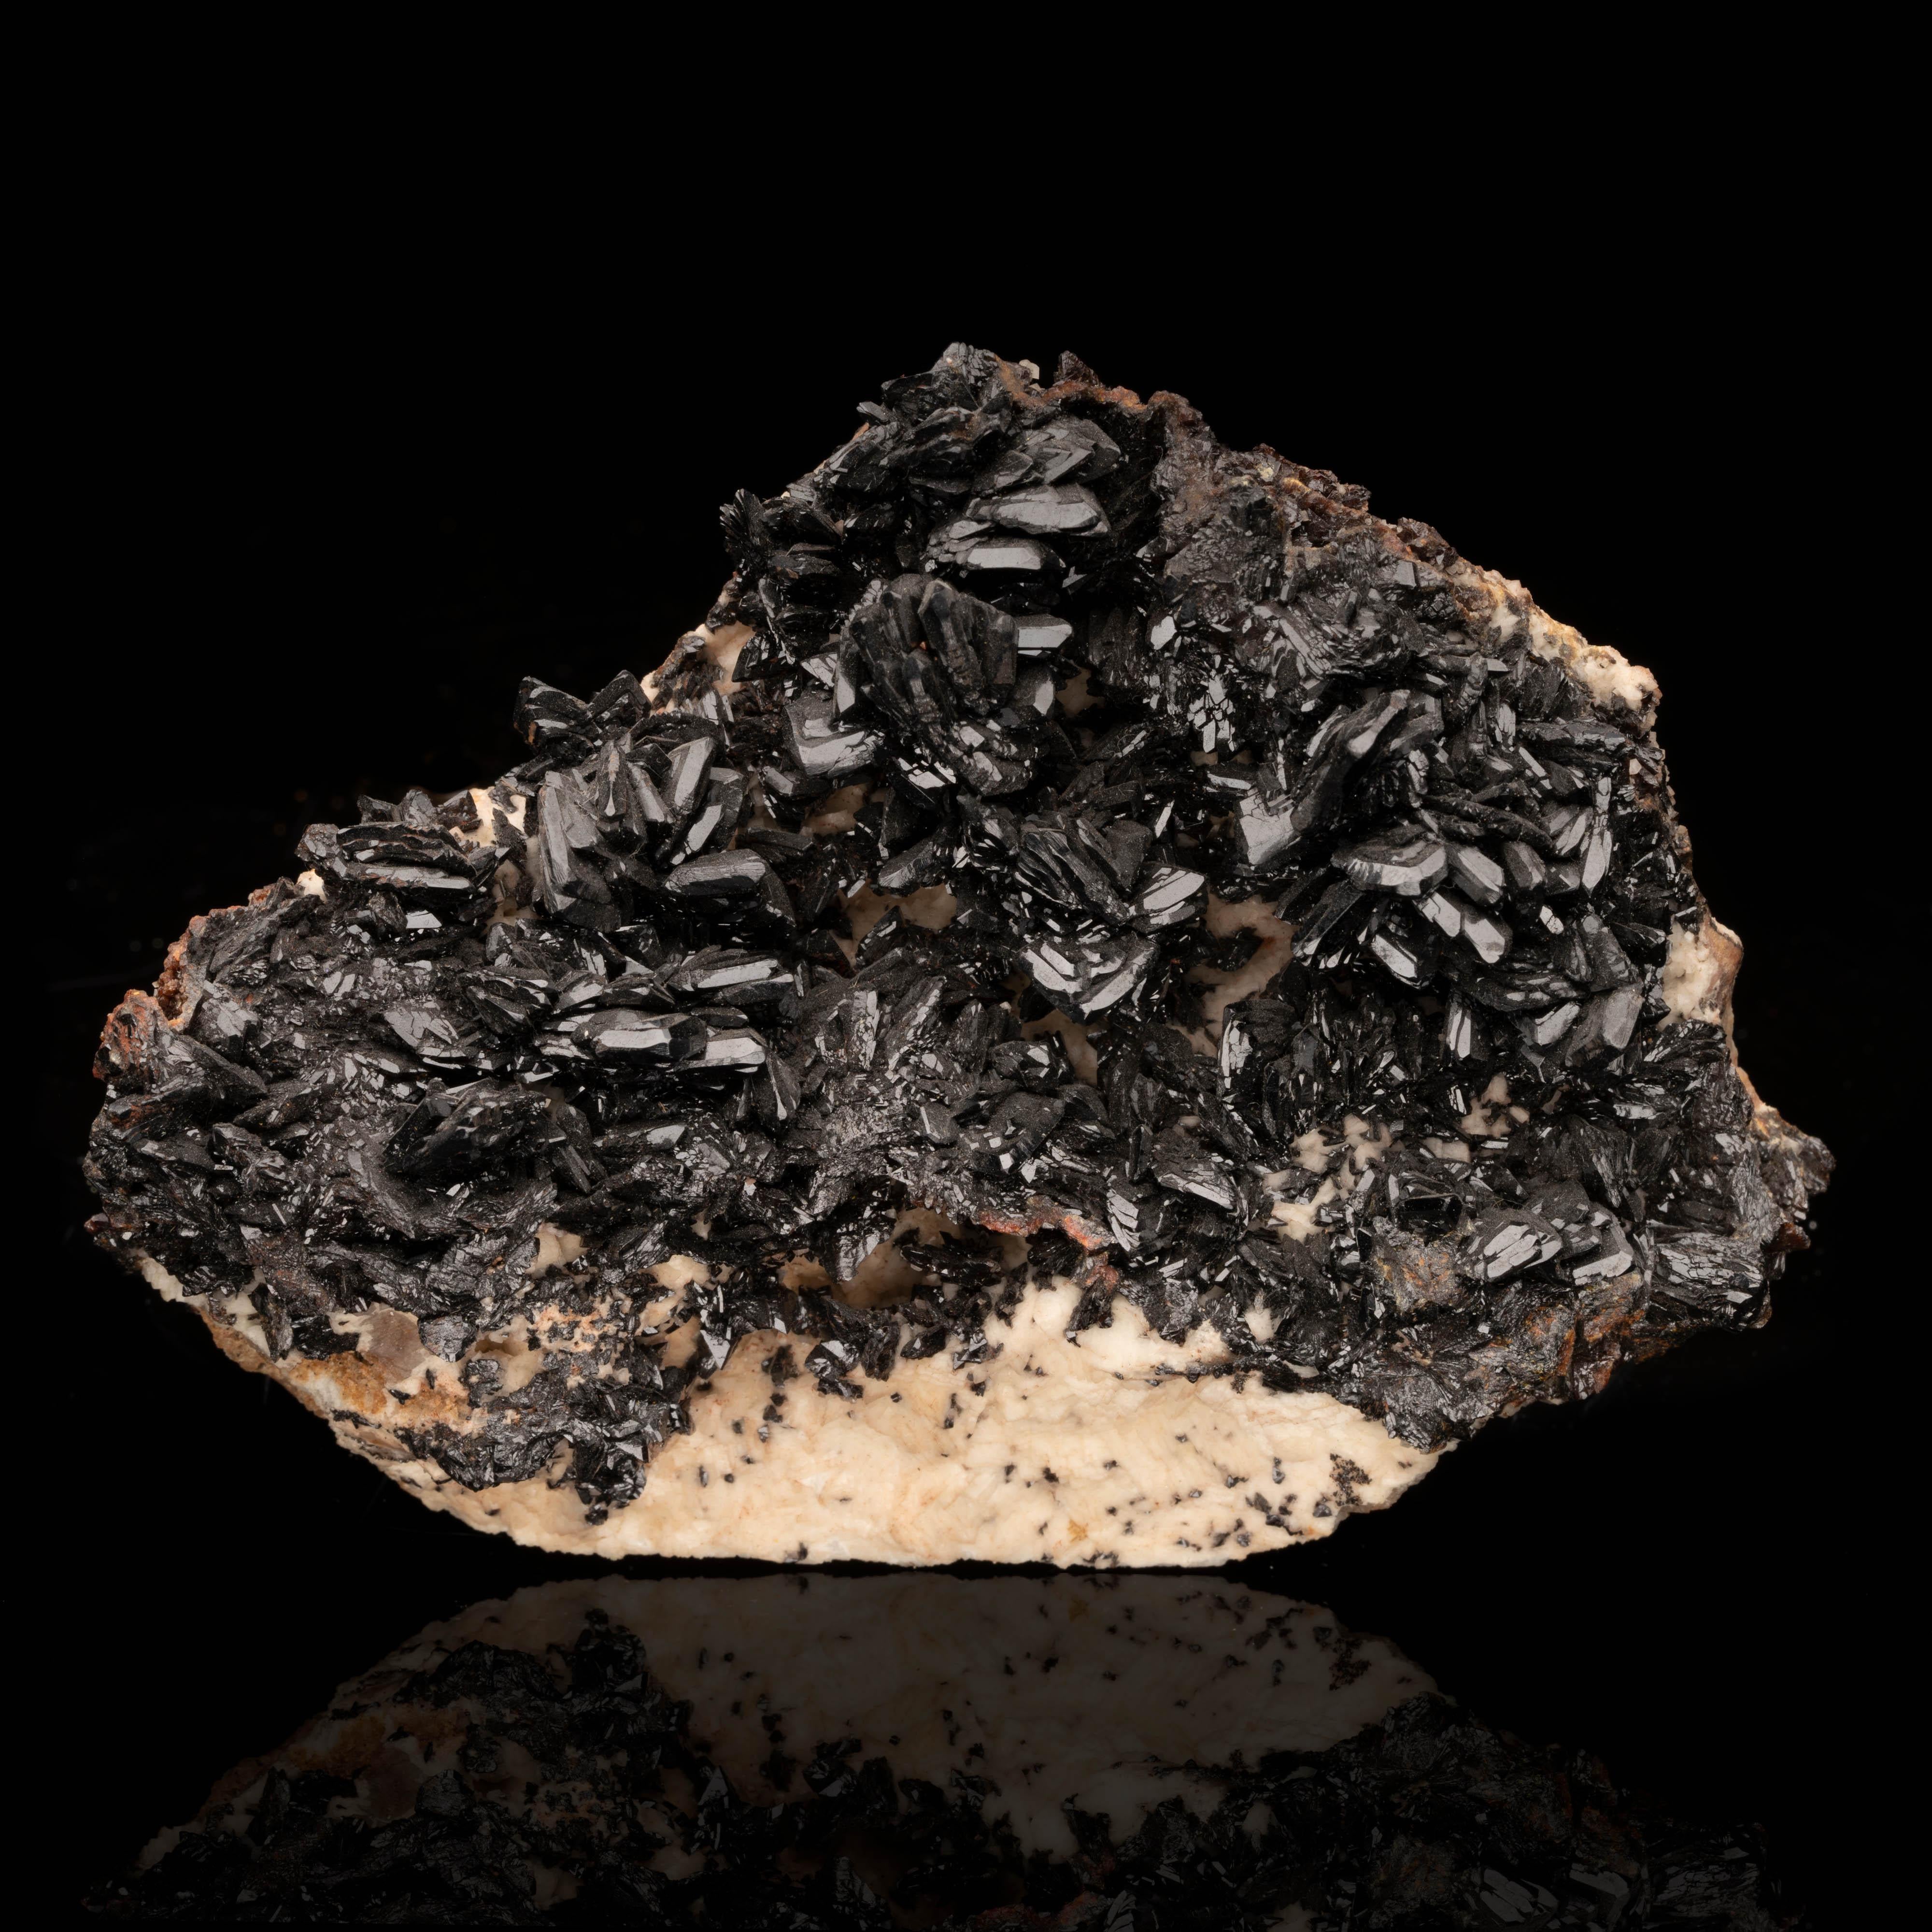 La descloizite est rare, d'une couleur sombre, lustrée et bien définie. Elle provient d'une poche extraite dans les années 1970 de la mine Tsumeb dans la région d'Oshikoto en Namibie, les grands cristaux entièrement formés de cet excellent spécimen